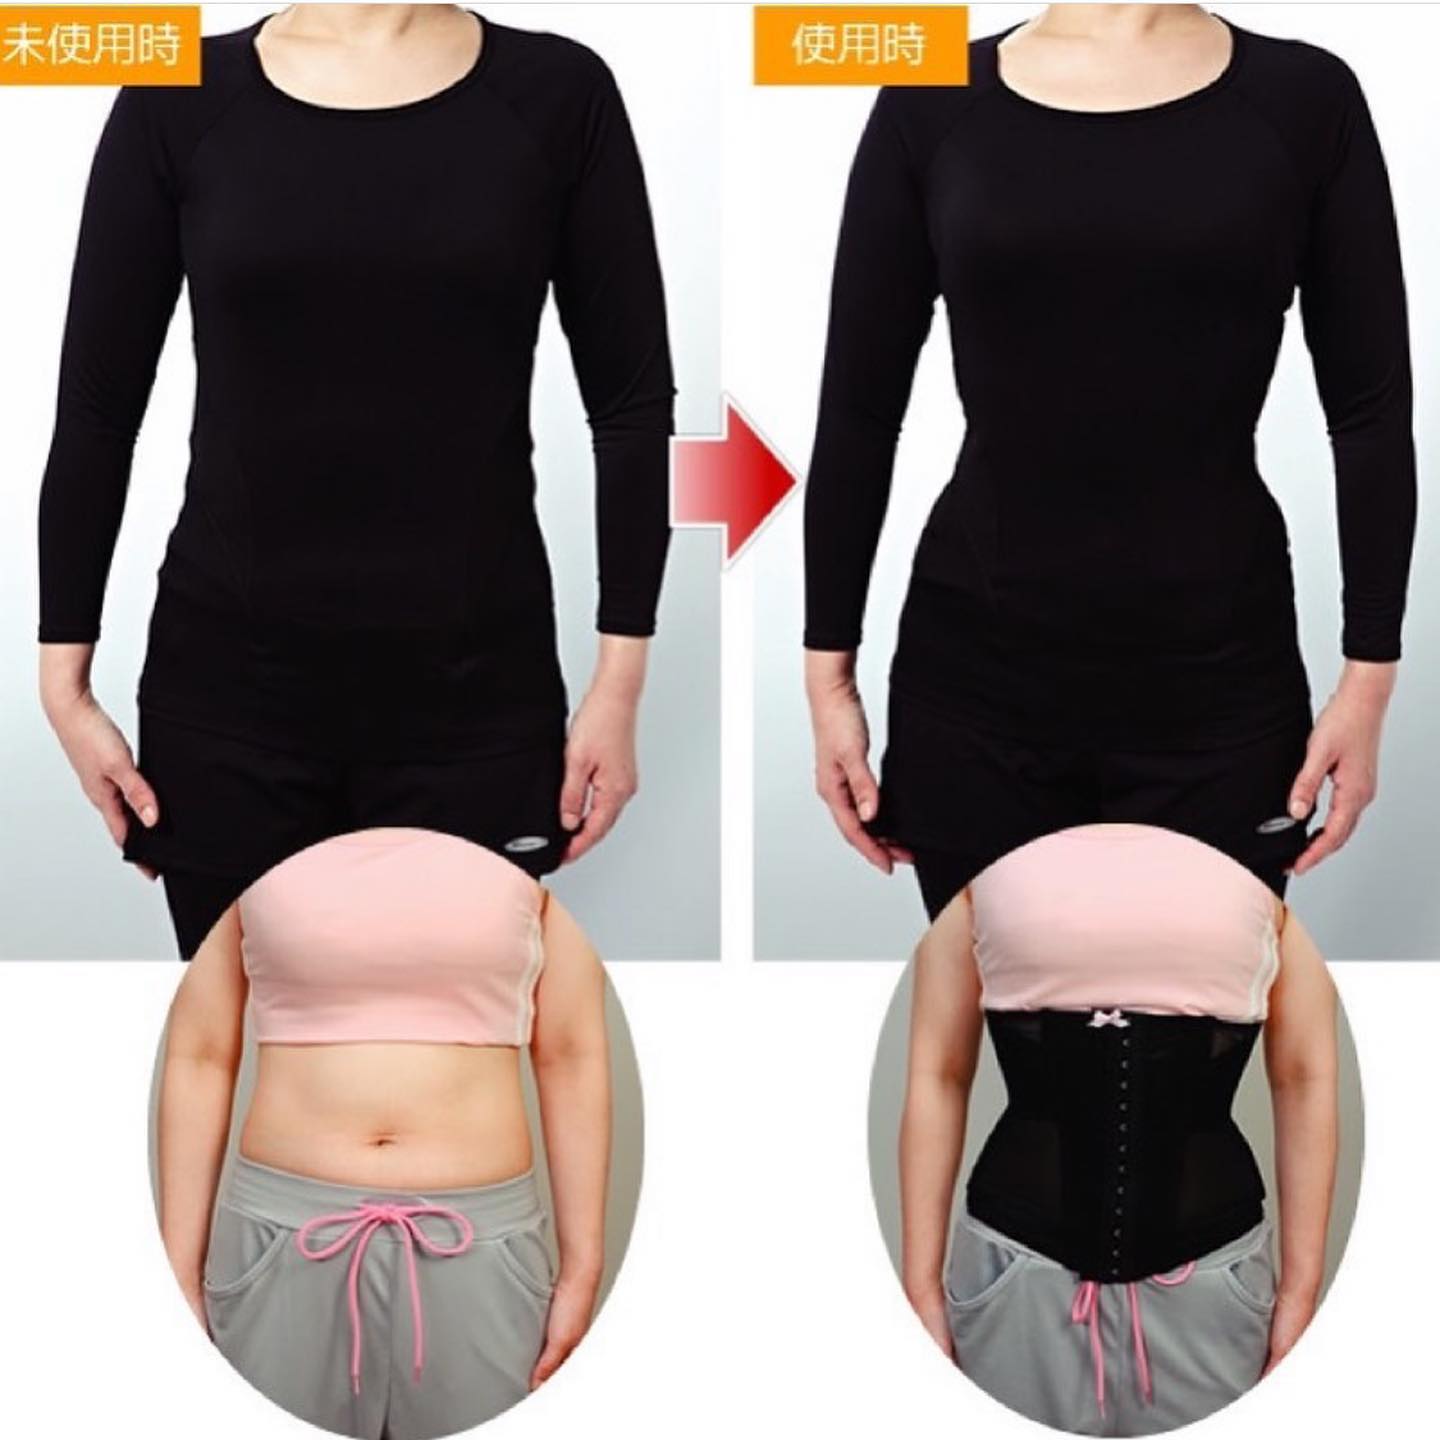 Cogit超薄透氣修腰帶 腰封 堅持使用1年減20KG